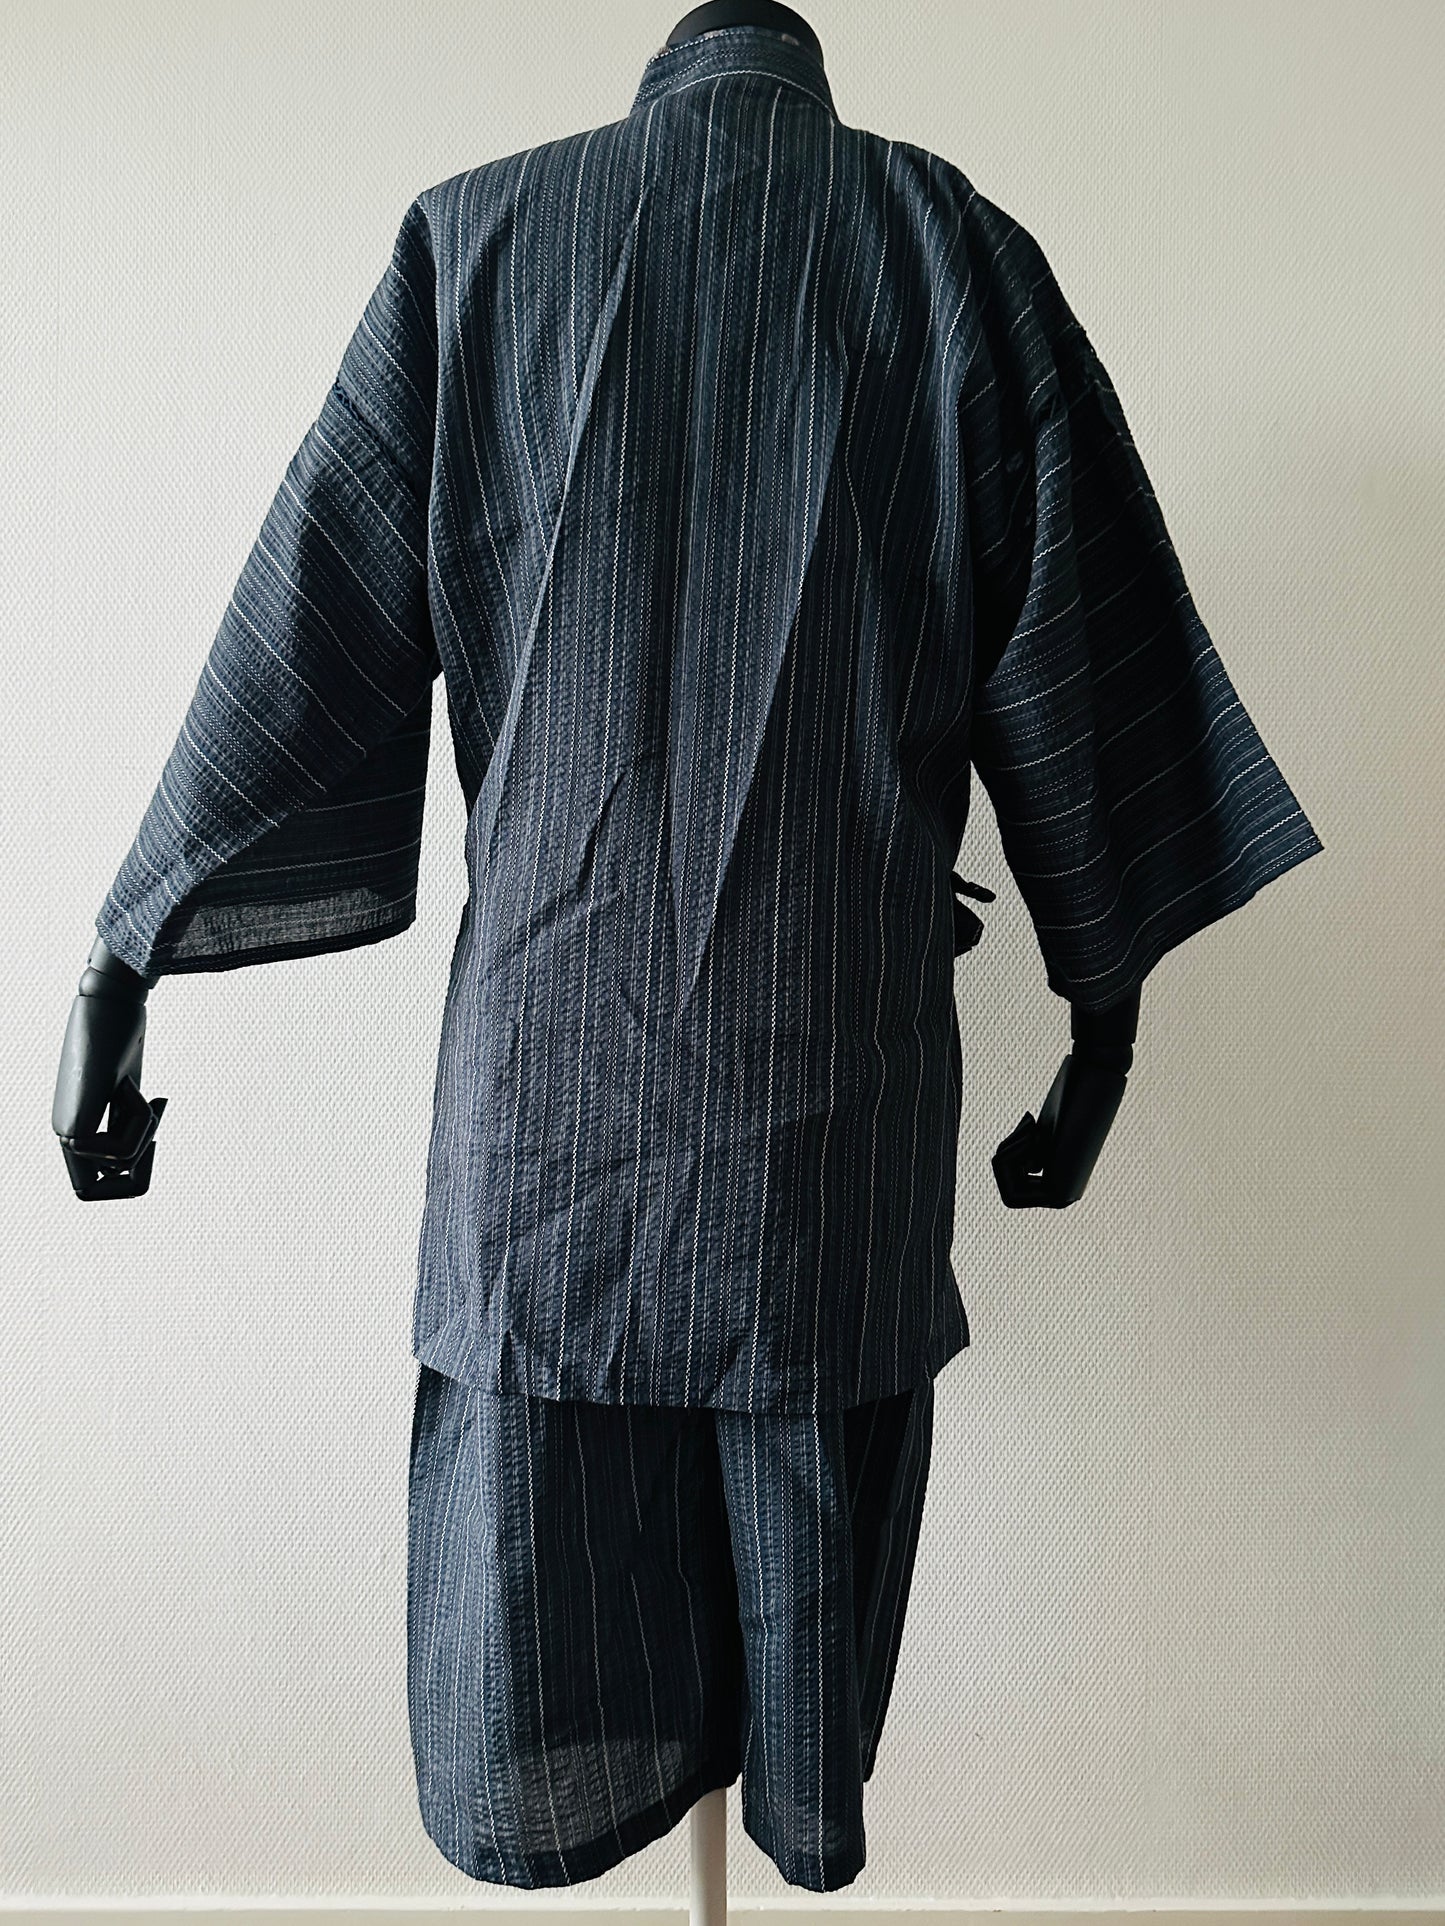 【Schwarz, shijira-ori （seersucker）】 Jinbei/Größe: 3L ＜ New ・ Baumwolle ＞ Für Männer, für Frauen, für Kinder, japanische Kimono, Japan Unisexesische Kleidung, Unisex, japanische Geschenke, entspannen Sie sich